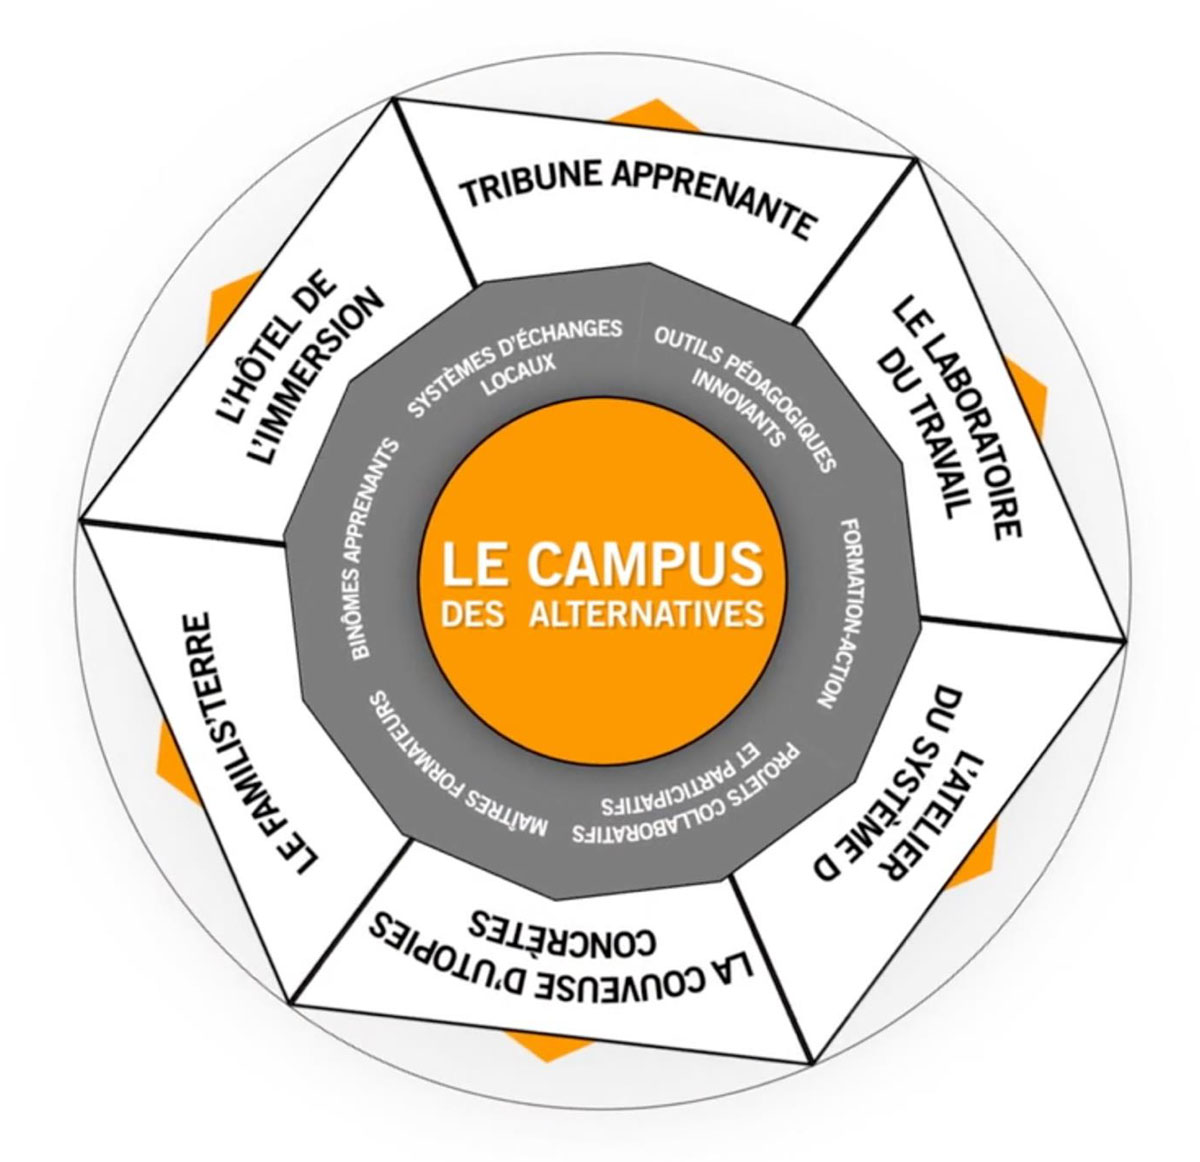 Schéma du campus des alternatives